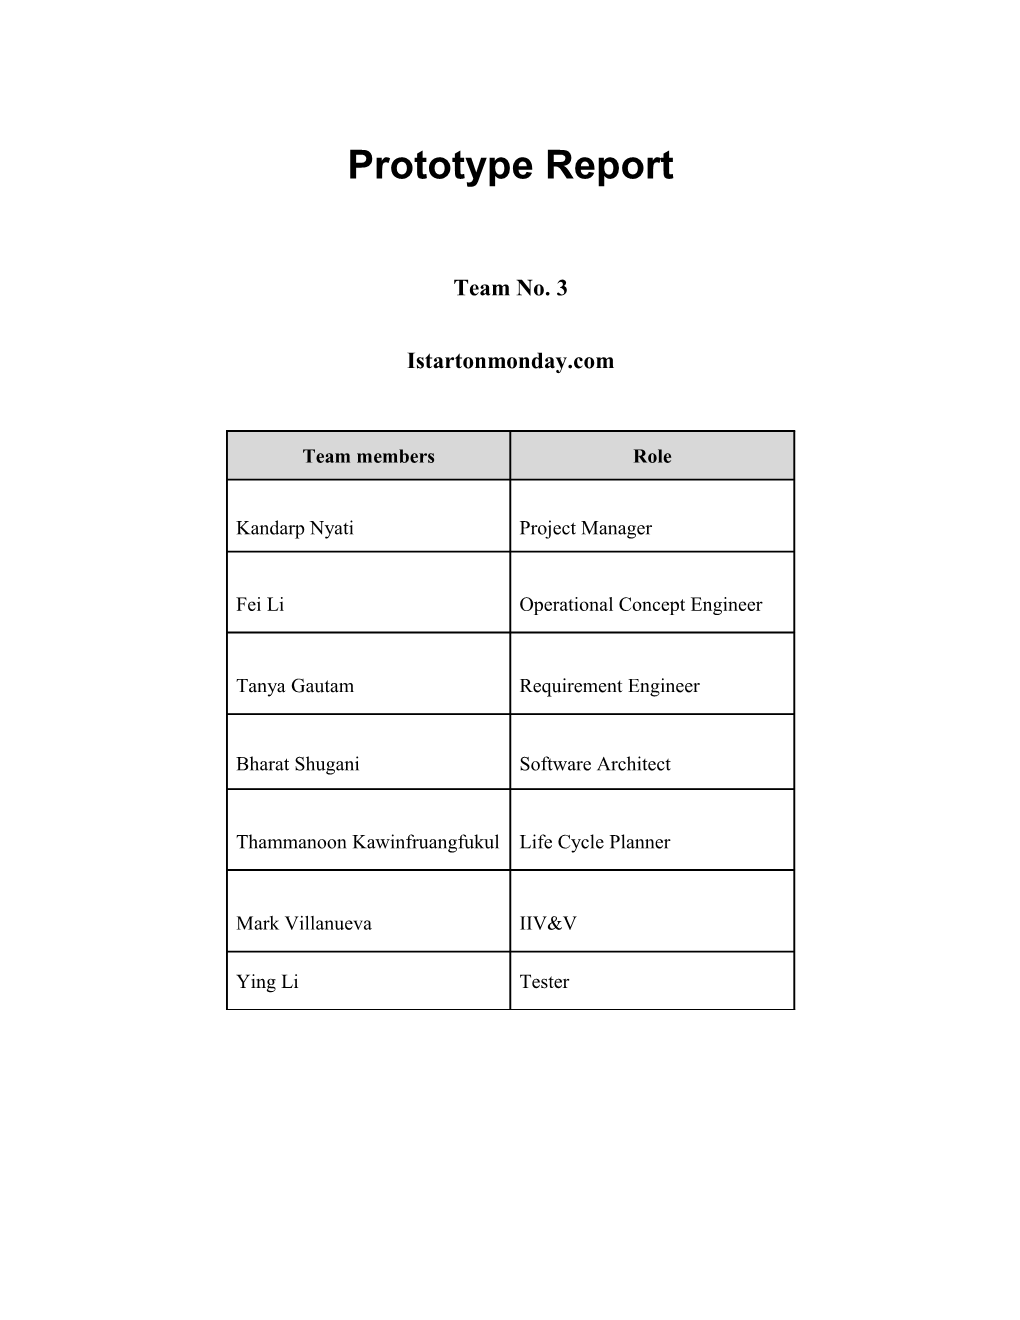 Prototype Report Version 2.0